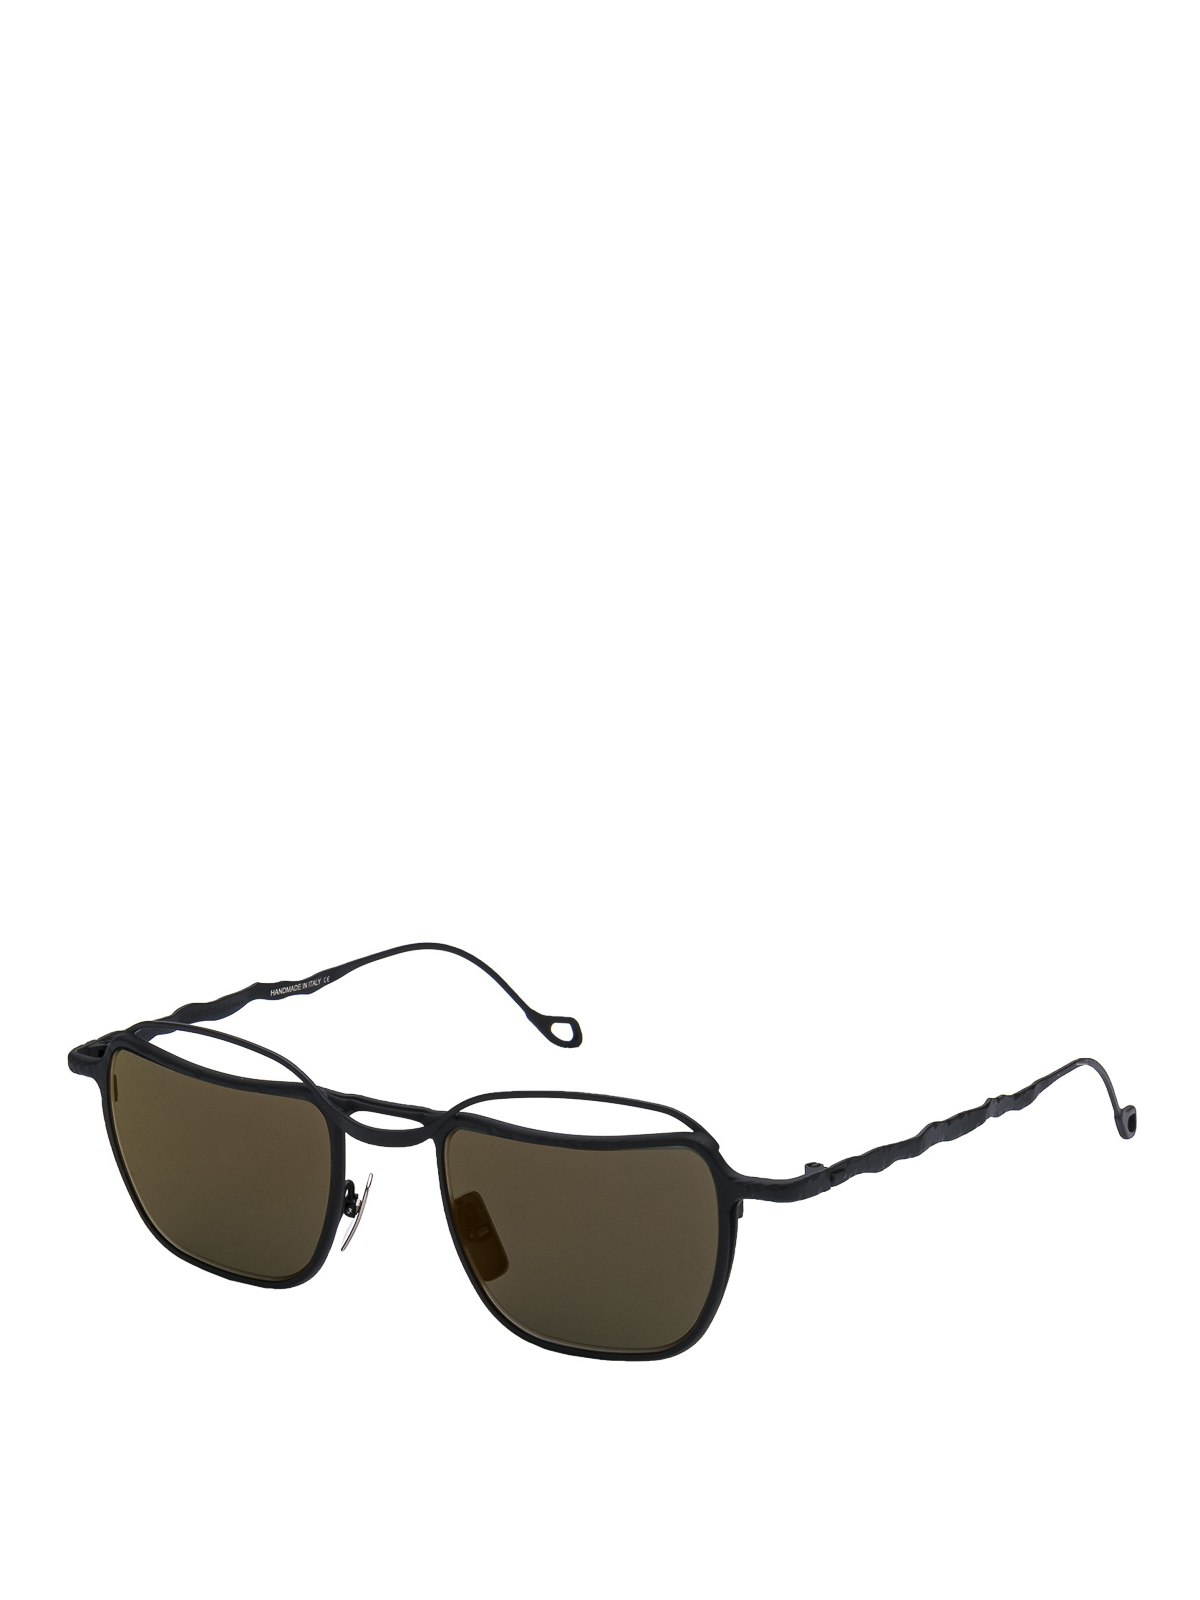 Womens Sunglasses Kuboraum Sunglasses Kuboraum H71 Glasses in Black 